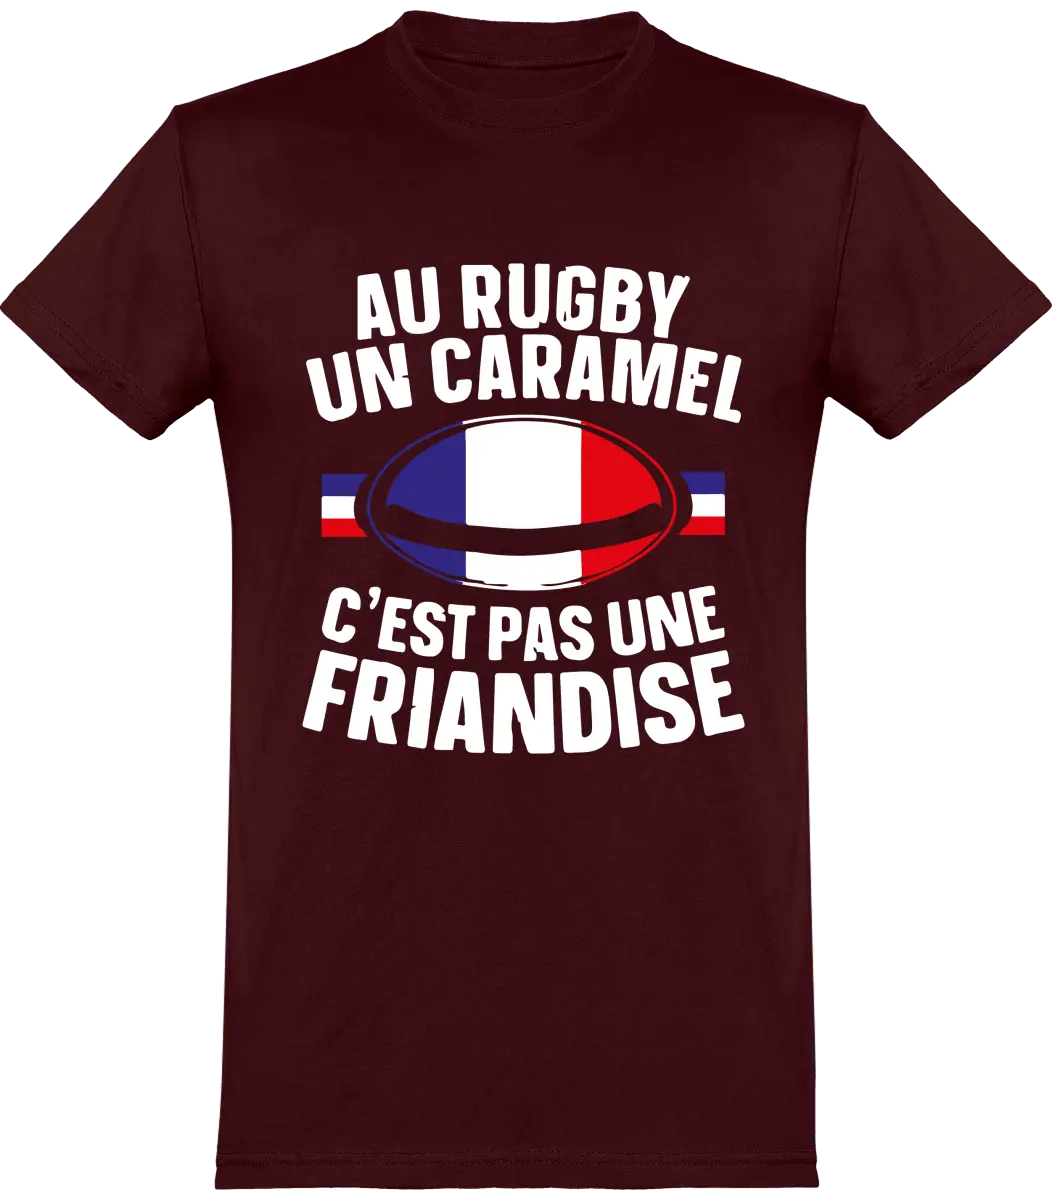 T-shirt Rugby "Au rugby un caramel c'est pas une friandise" | Mixte - French Humour